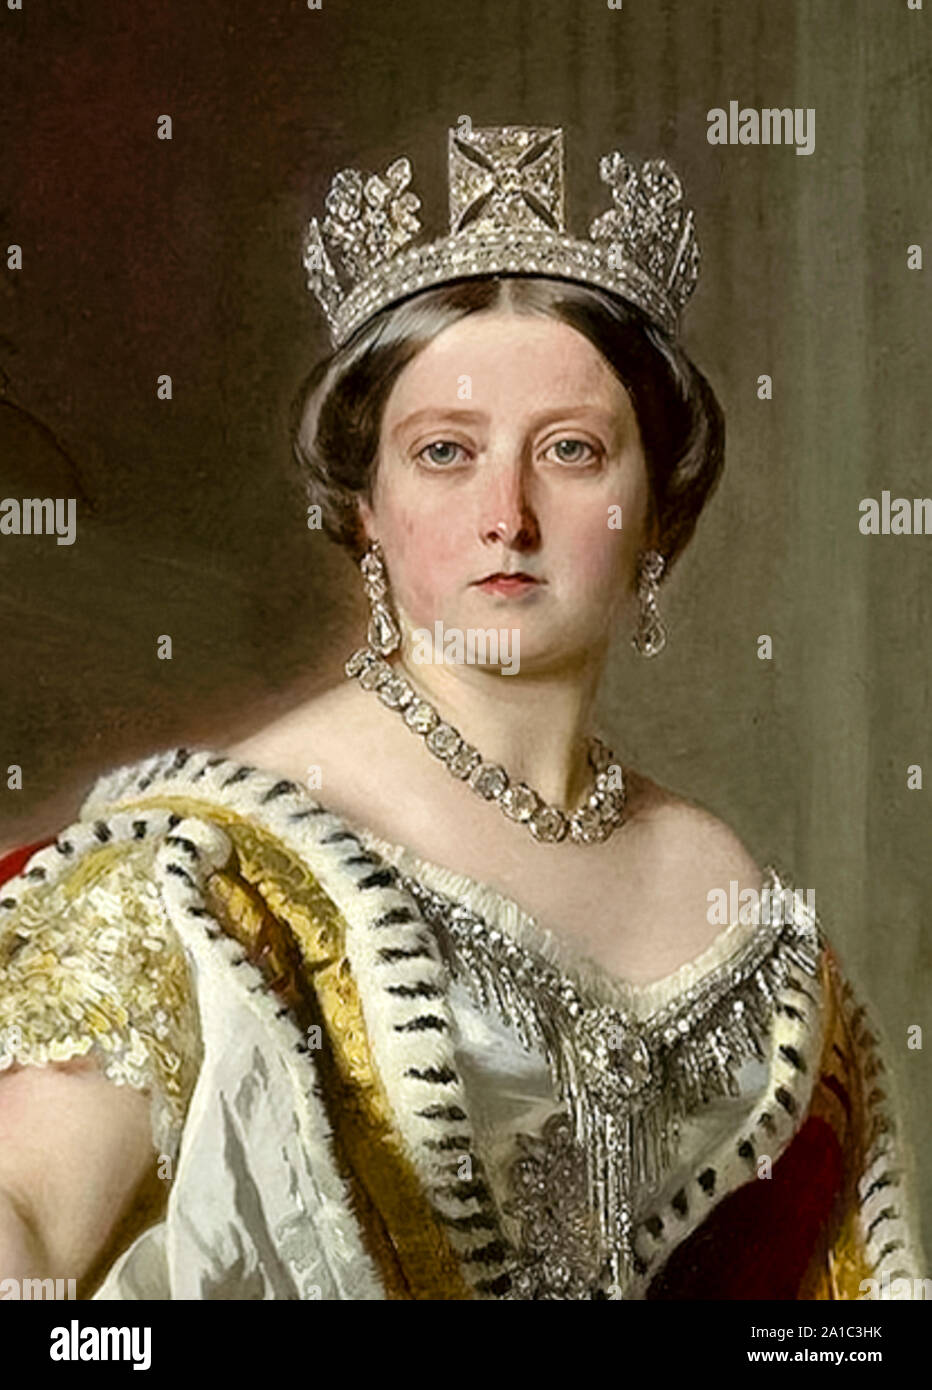 La reine Victoria (1819-1901), détail de la peinture à l'huile par Franz Xaver Winterhalter (1805-1873) peint en 1859. Banque D'Images